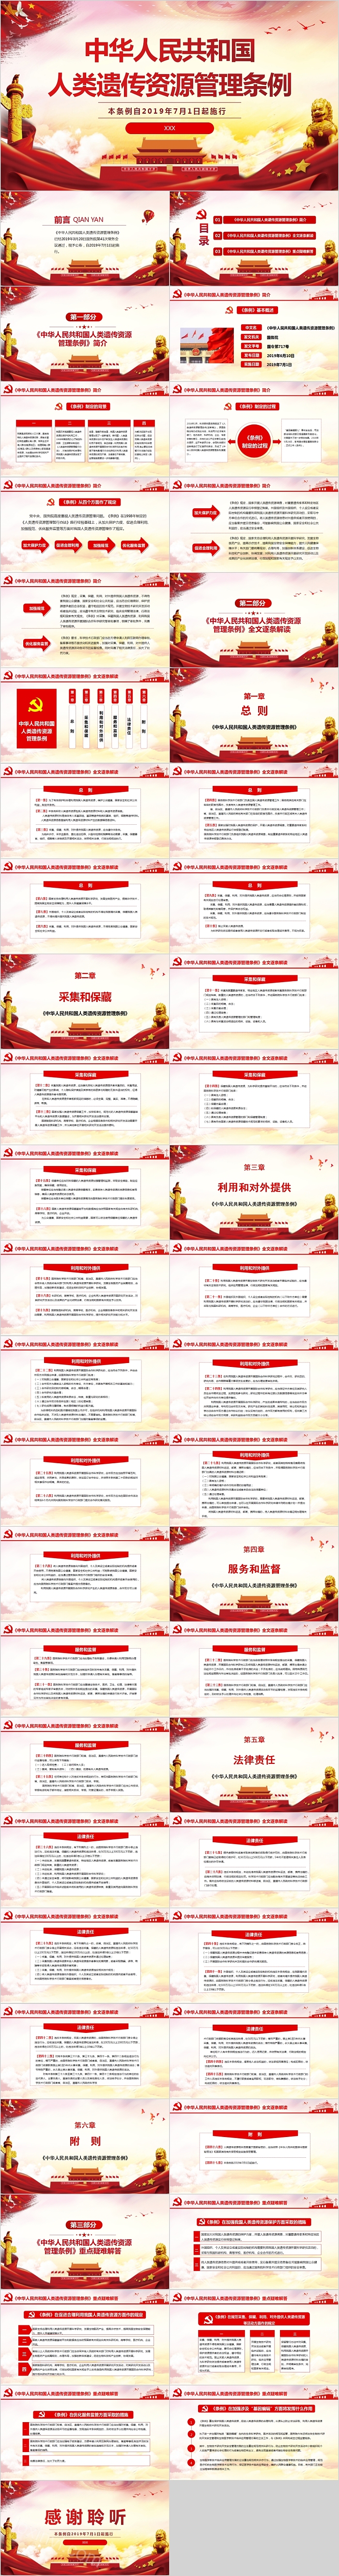 中华人民共和国人类遗传资源管理条例微党课PPT模板